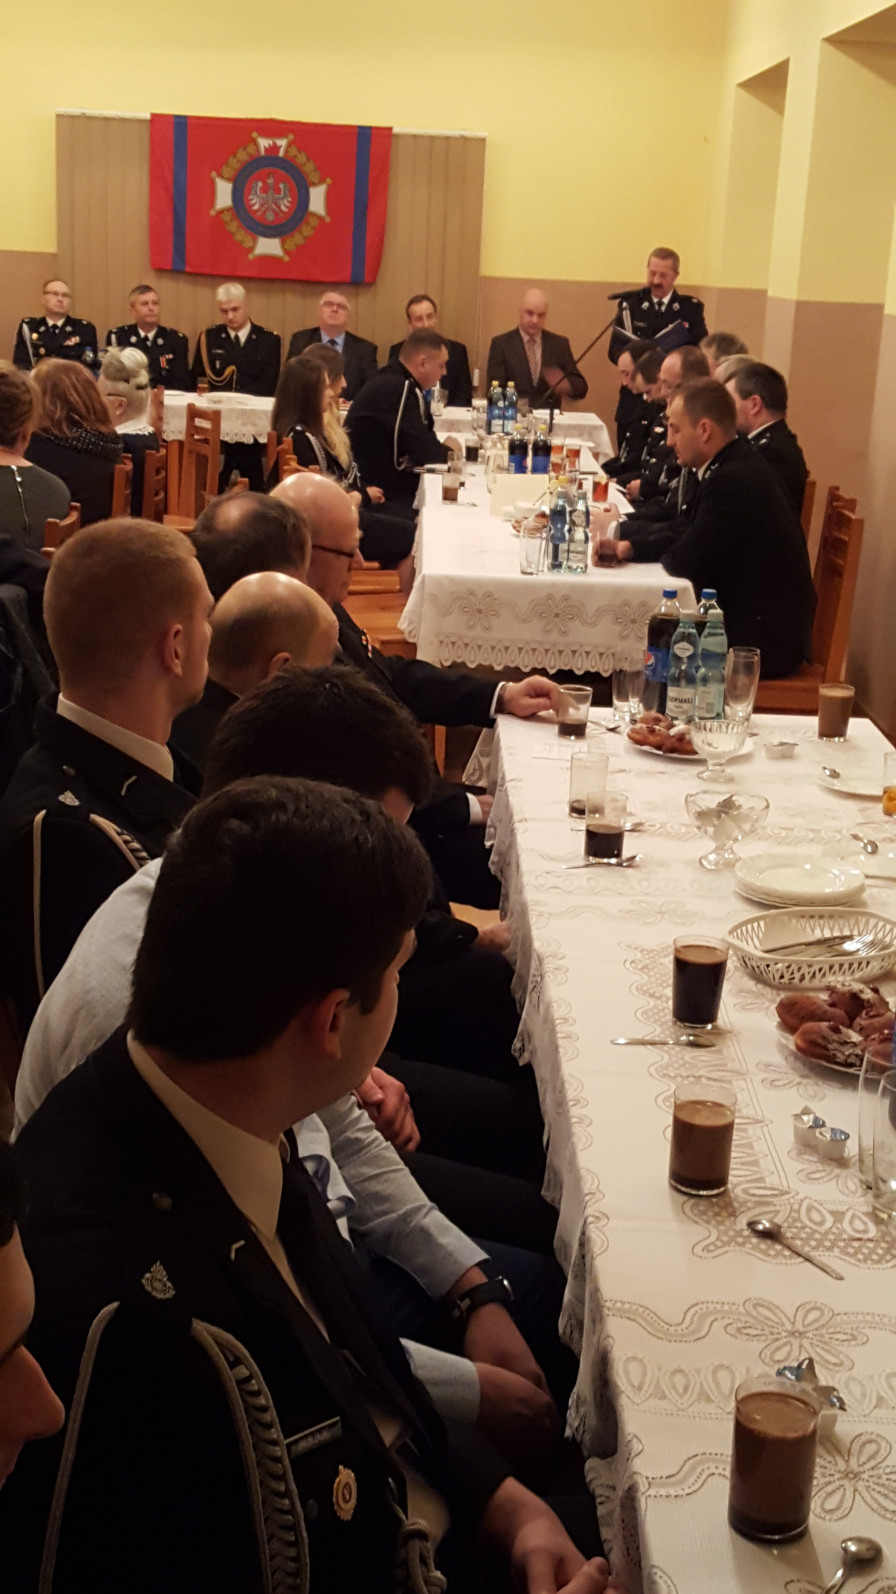 Walne zebranie - zdjęcie wykonano w trakcie przemowy Prezesa OSP Rybarzowice